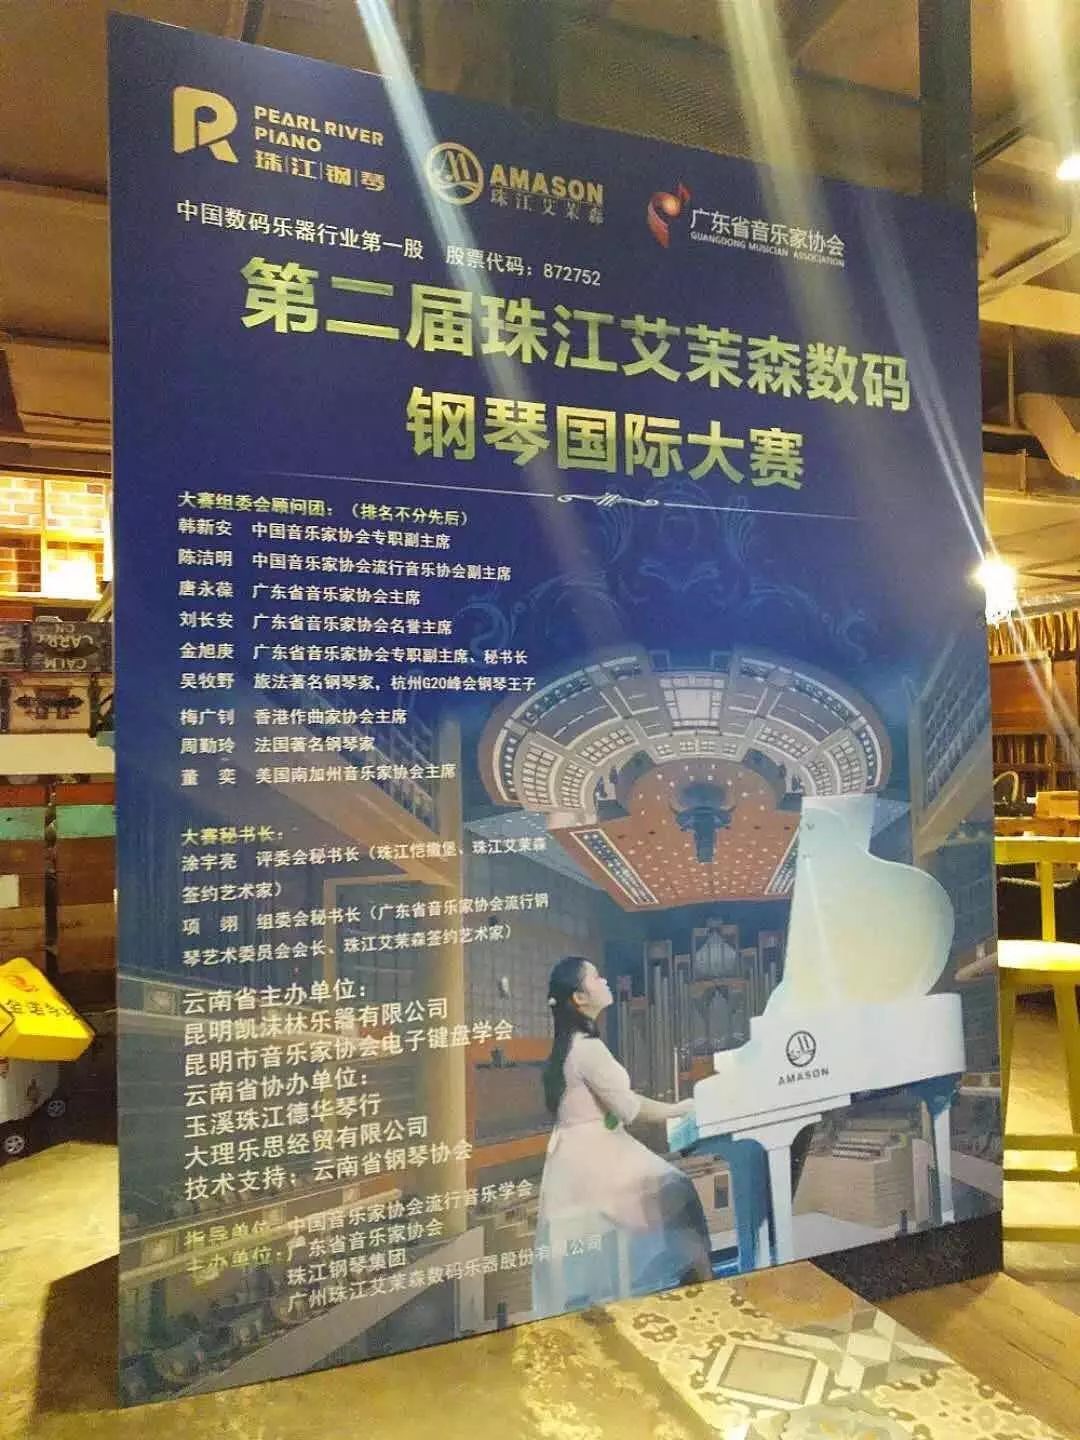 热烈祝贺第二届珠江艾茉森数码钢琴国际大赛云南、海南赛区圆满落